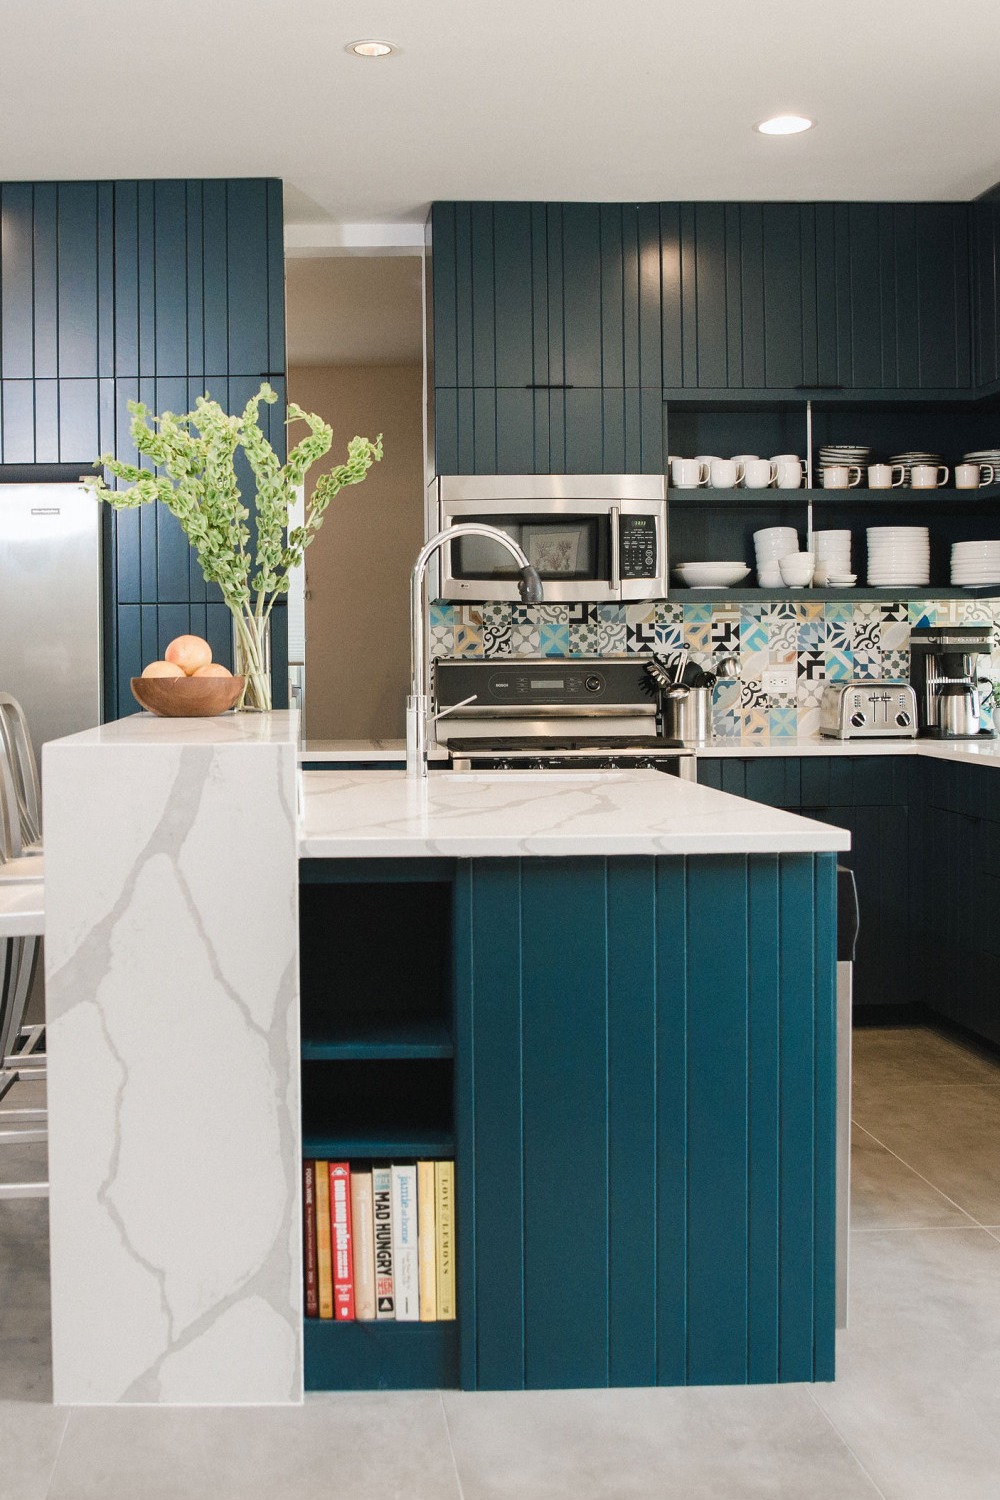 Contemporary Designs Mid Century Modern Kitchen Cabinets Plain Hardware Natural Warmth Sleek